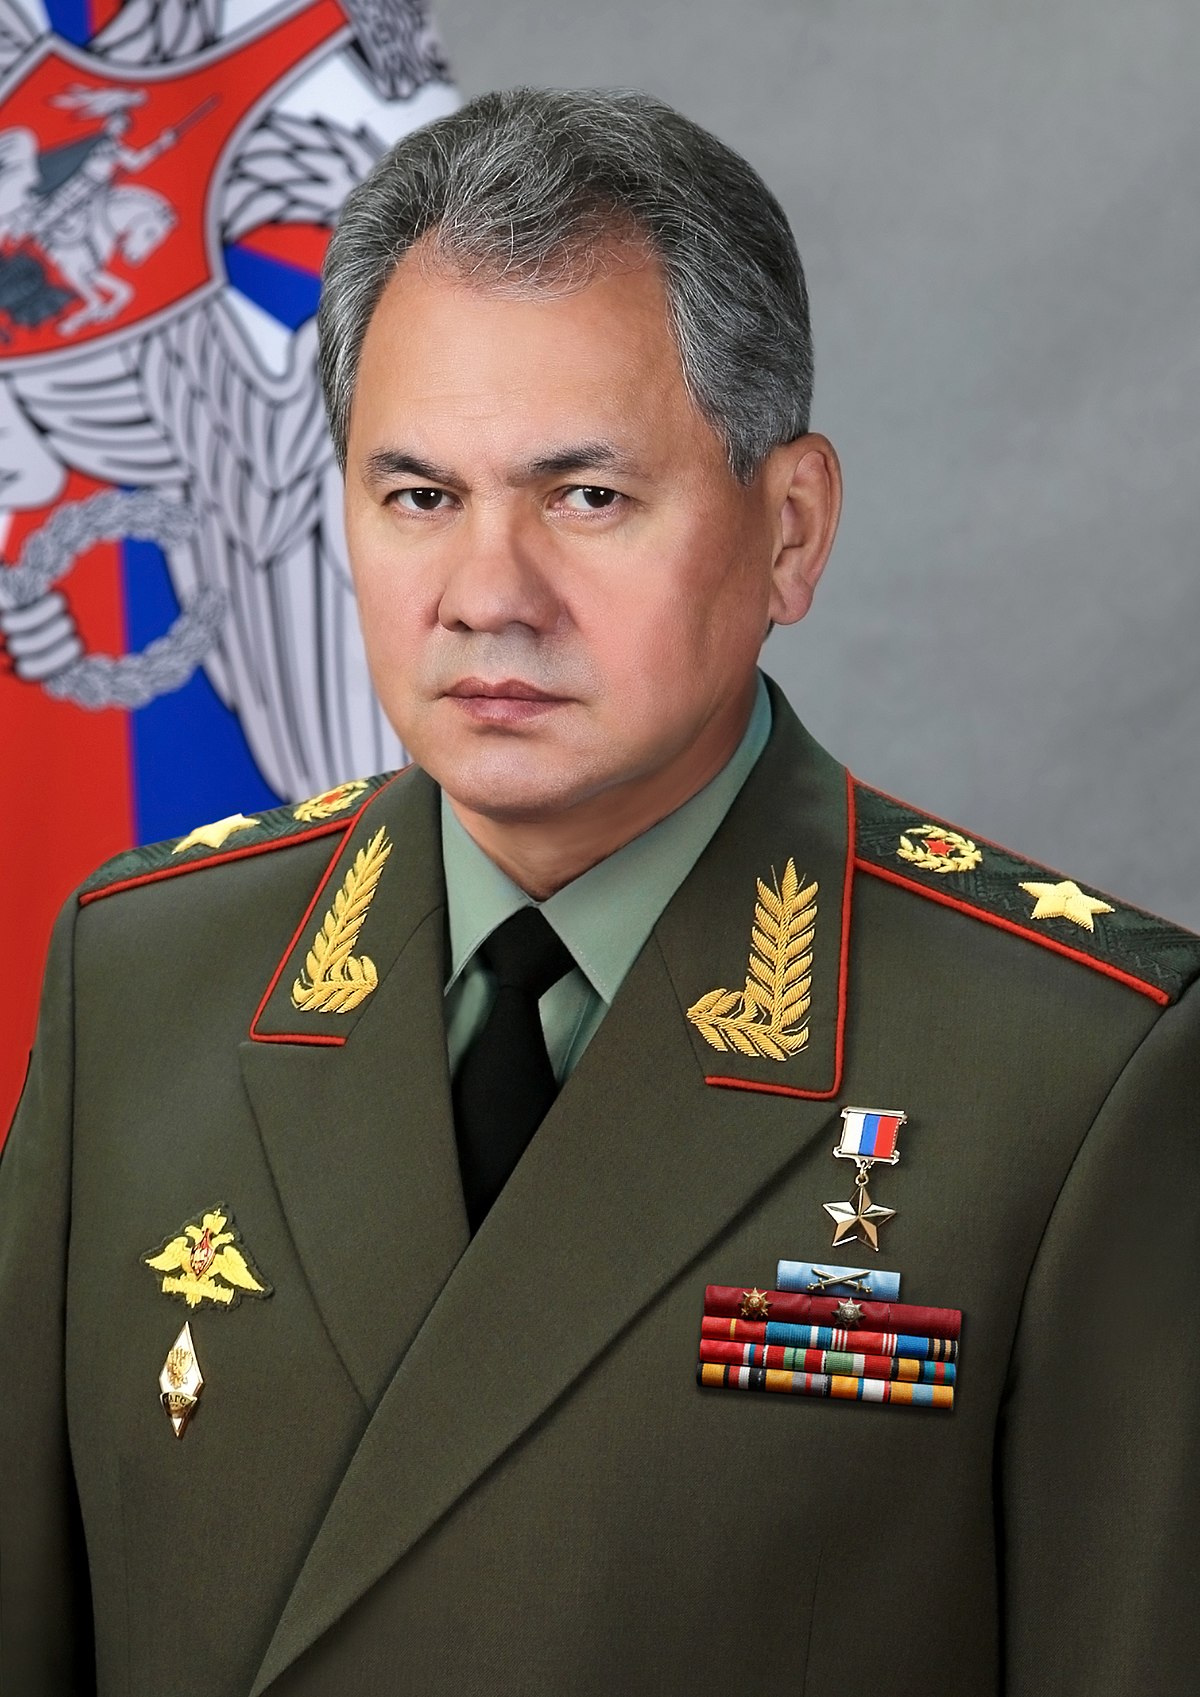 Шойгу: где родился, биография, национальность - все о Министре Обороны России